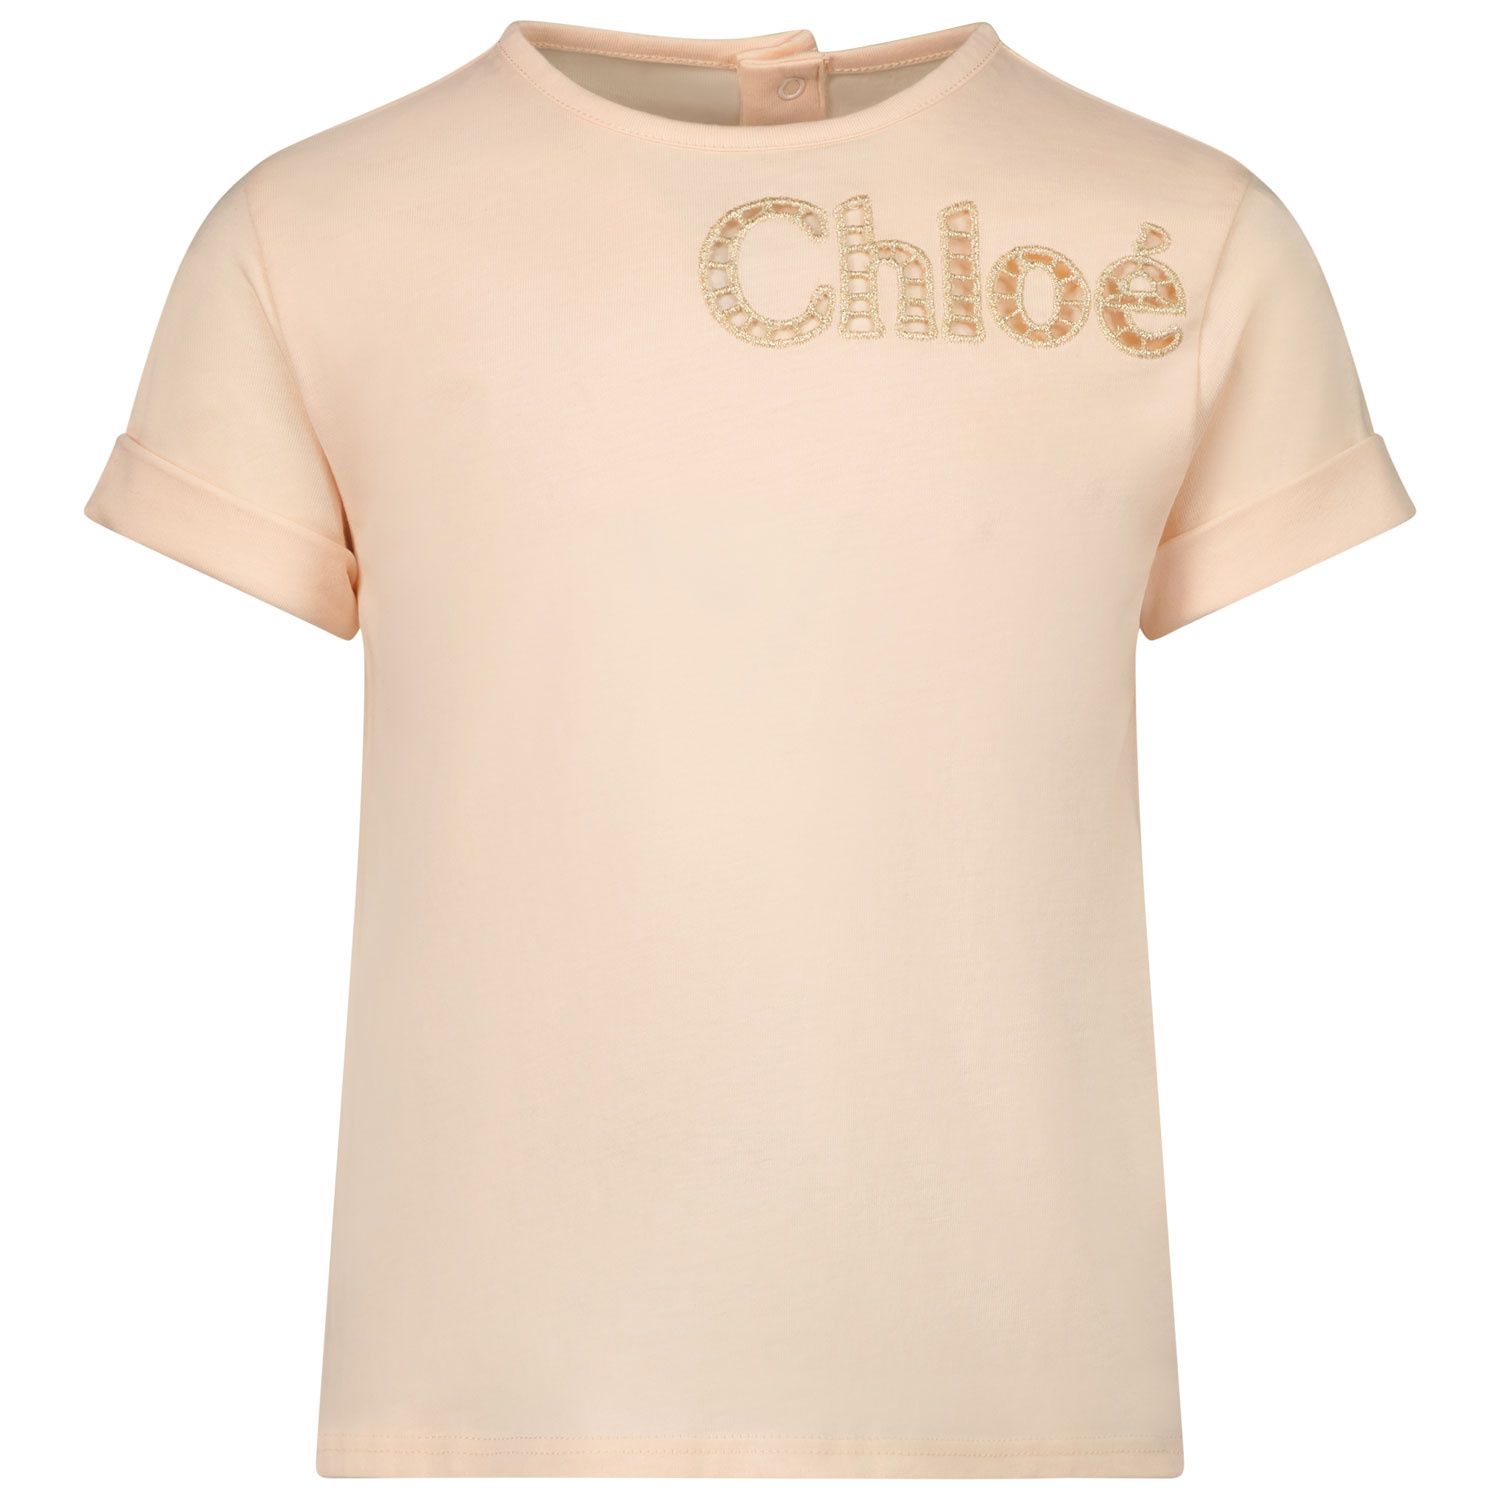 Afbeelding van Chloe C05405 baby t-shirt licht roze